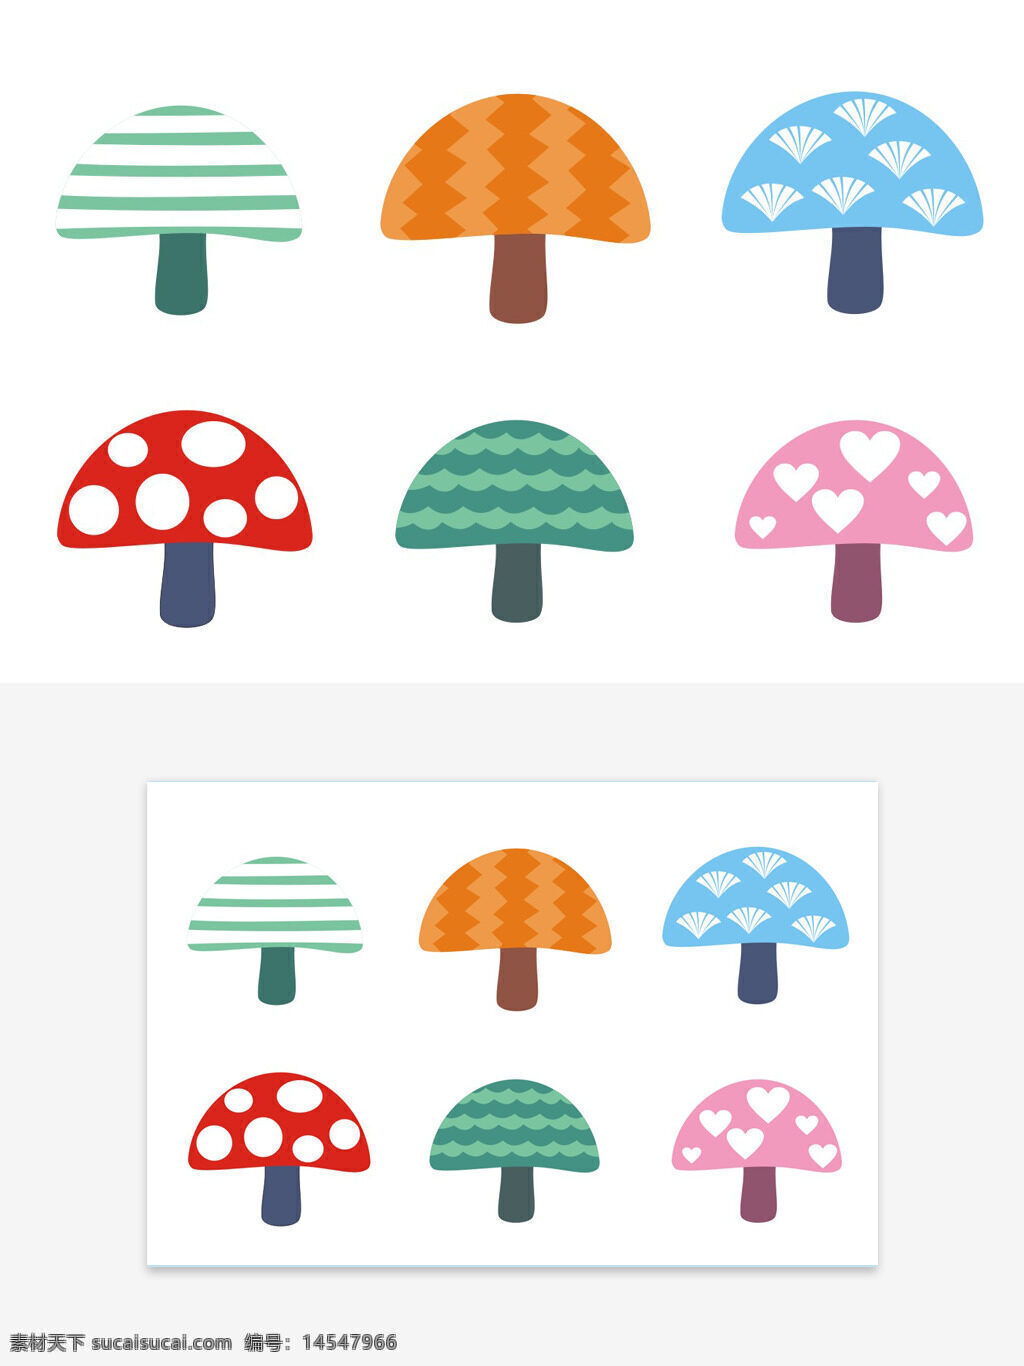 蘑菇 矢量图 可变色 可变尺寸 红色 黄色 兰色 绿色 粉色